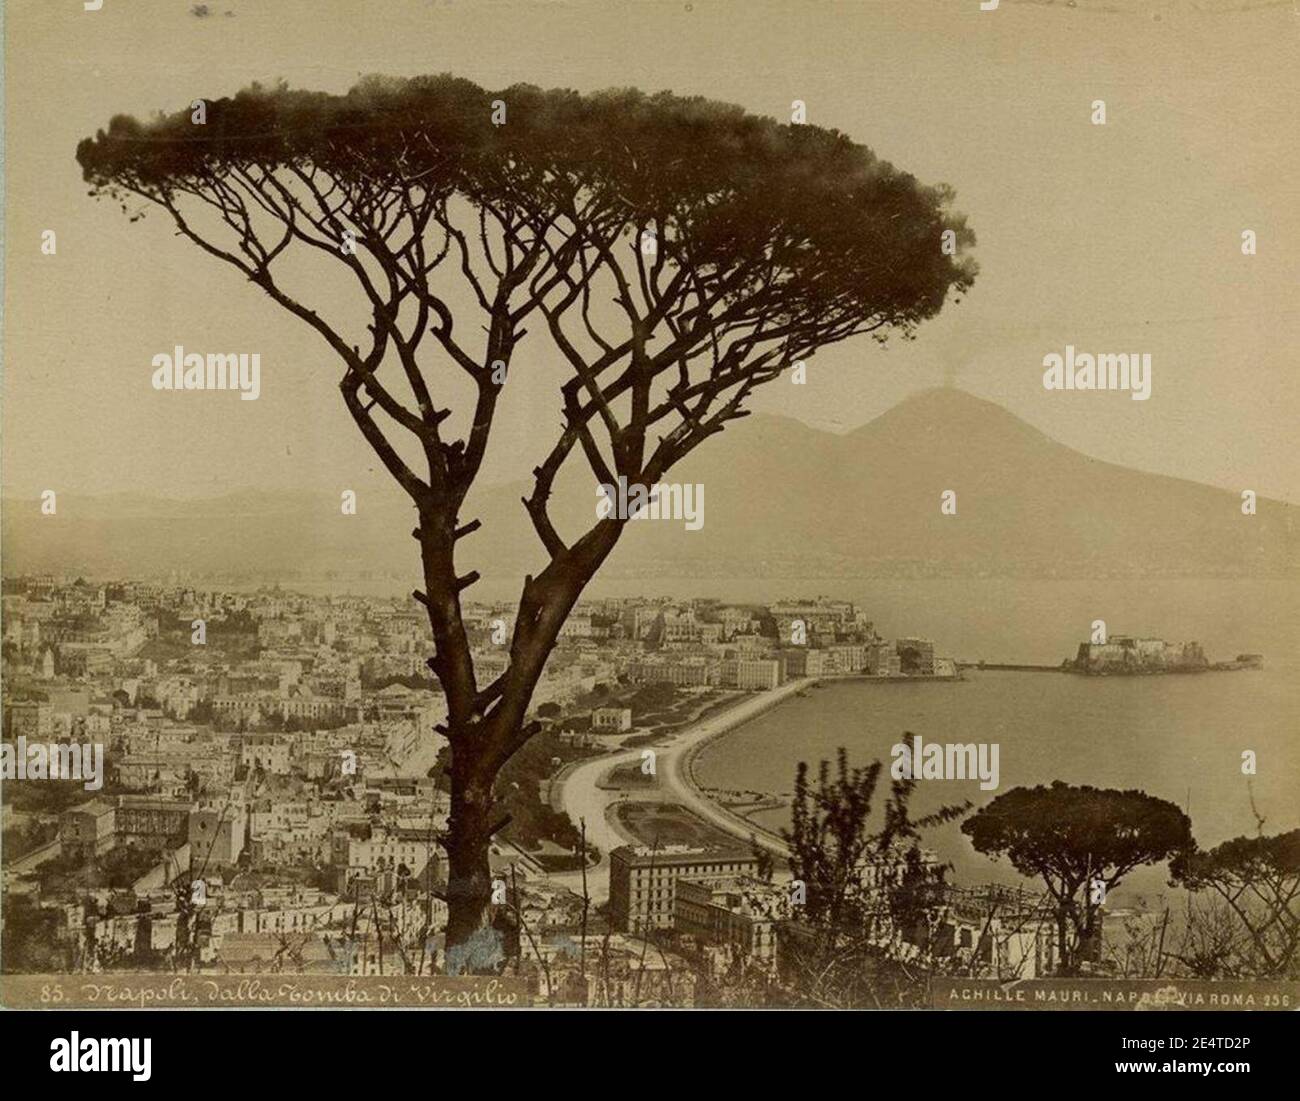 Mauri, Achille (fl.1860-1895) - 85 - Napoli dalla Tomba di Virgilio. Stock Photo